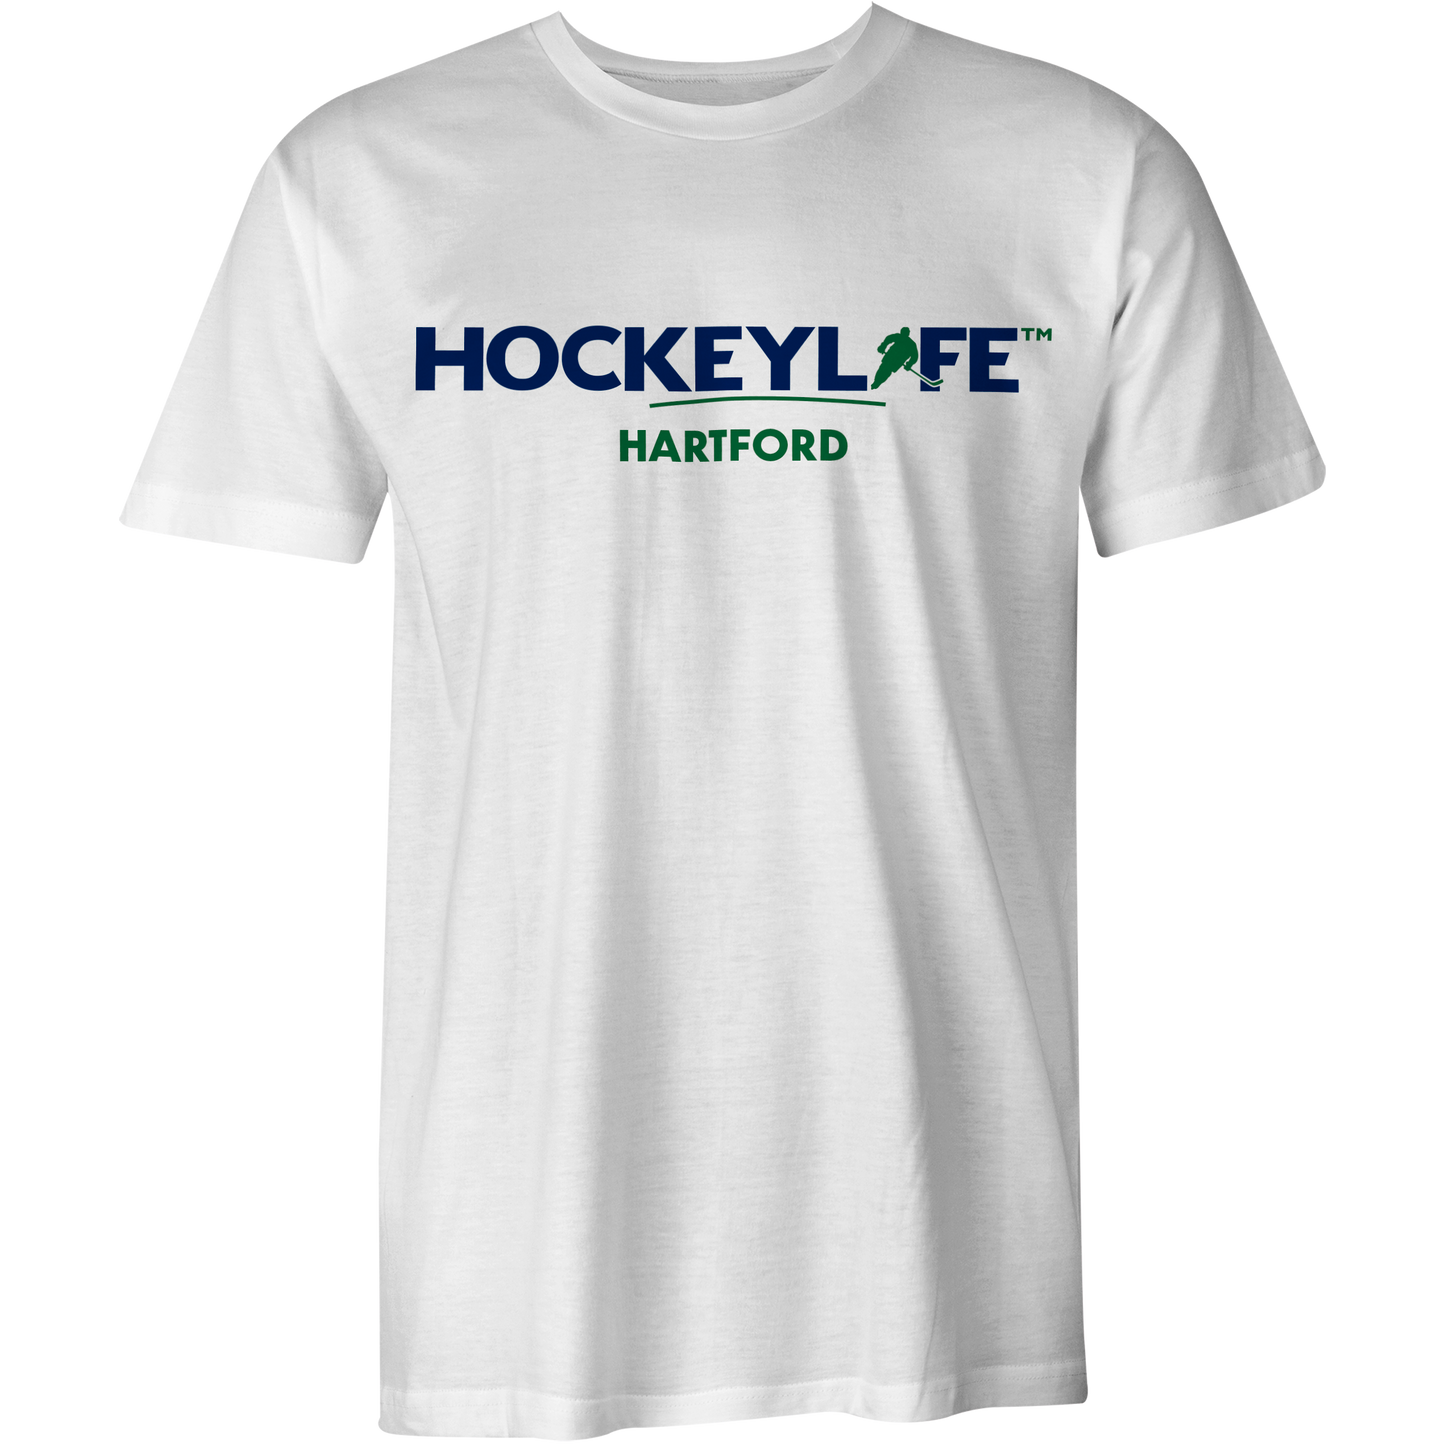 HockeyLife Hartford Tee Shirt